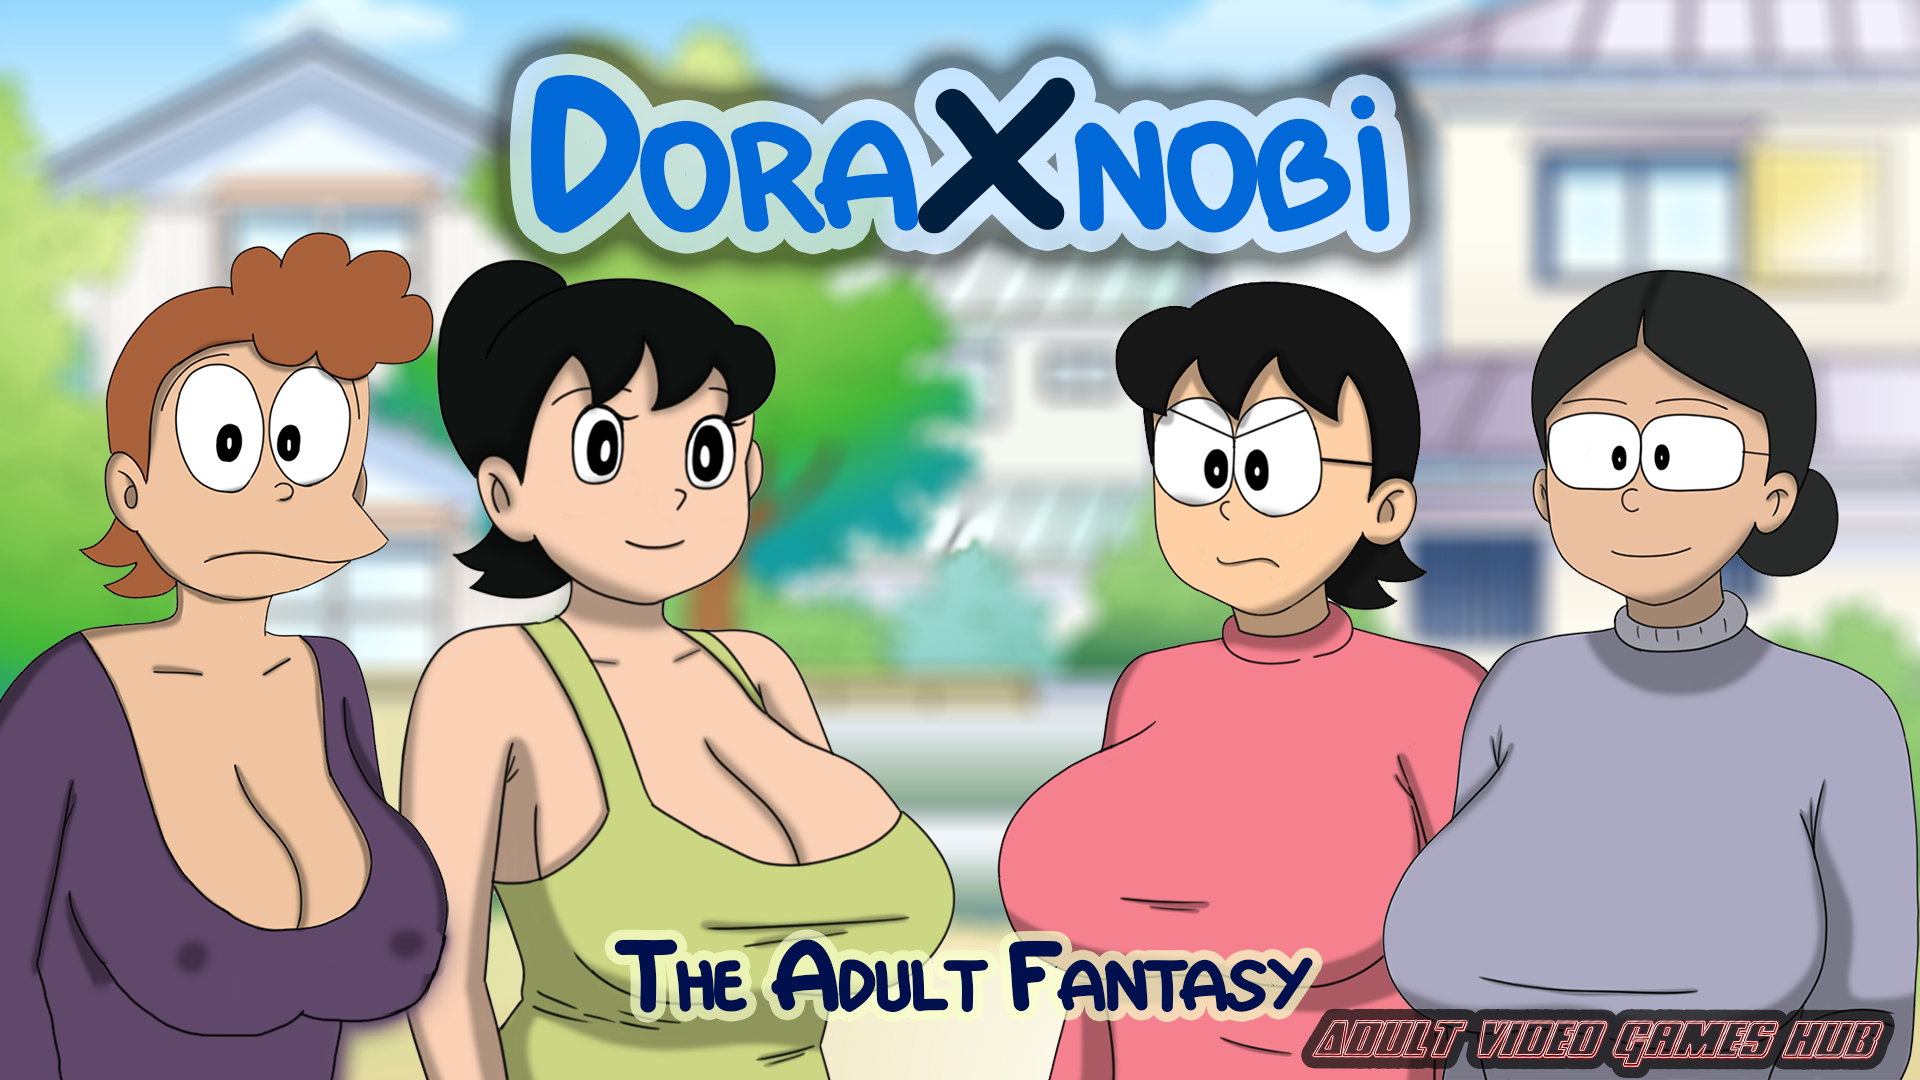 DoraXnobi - The Adult Fantasy [V19]